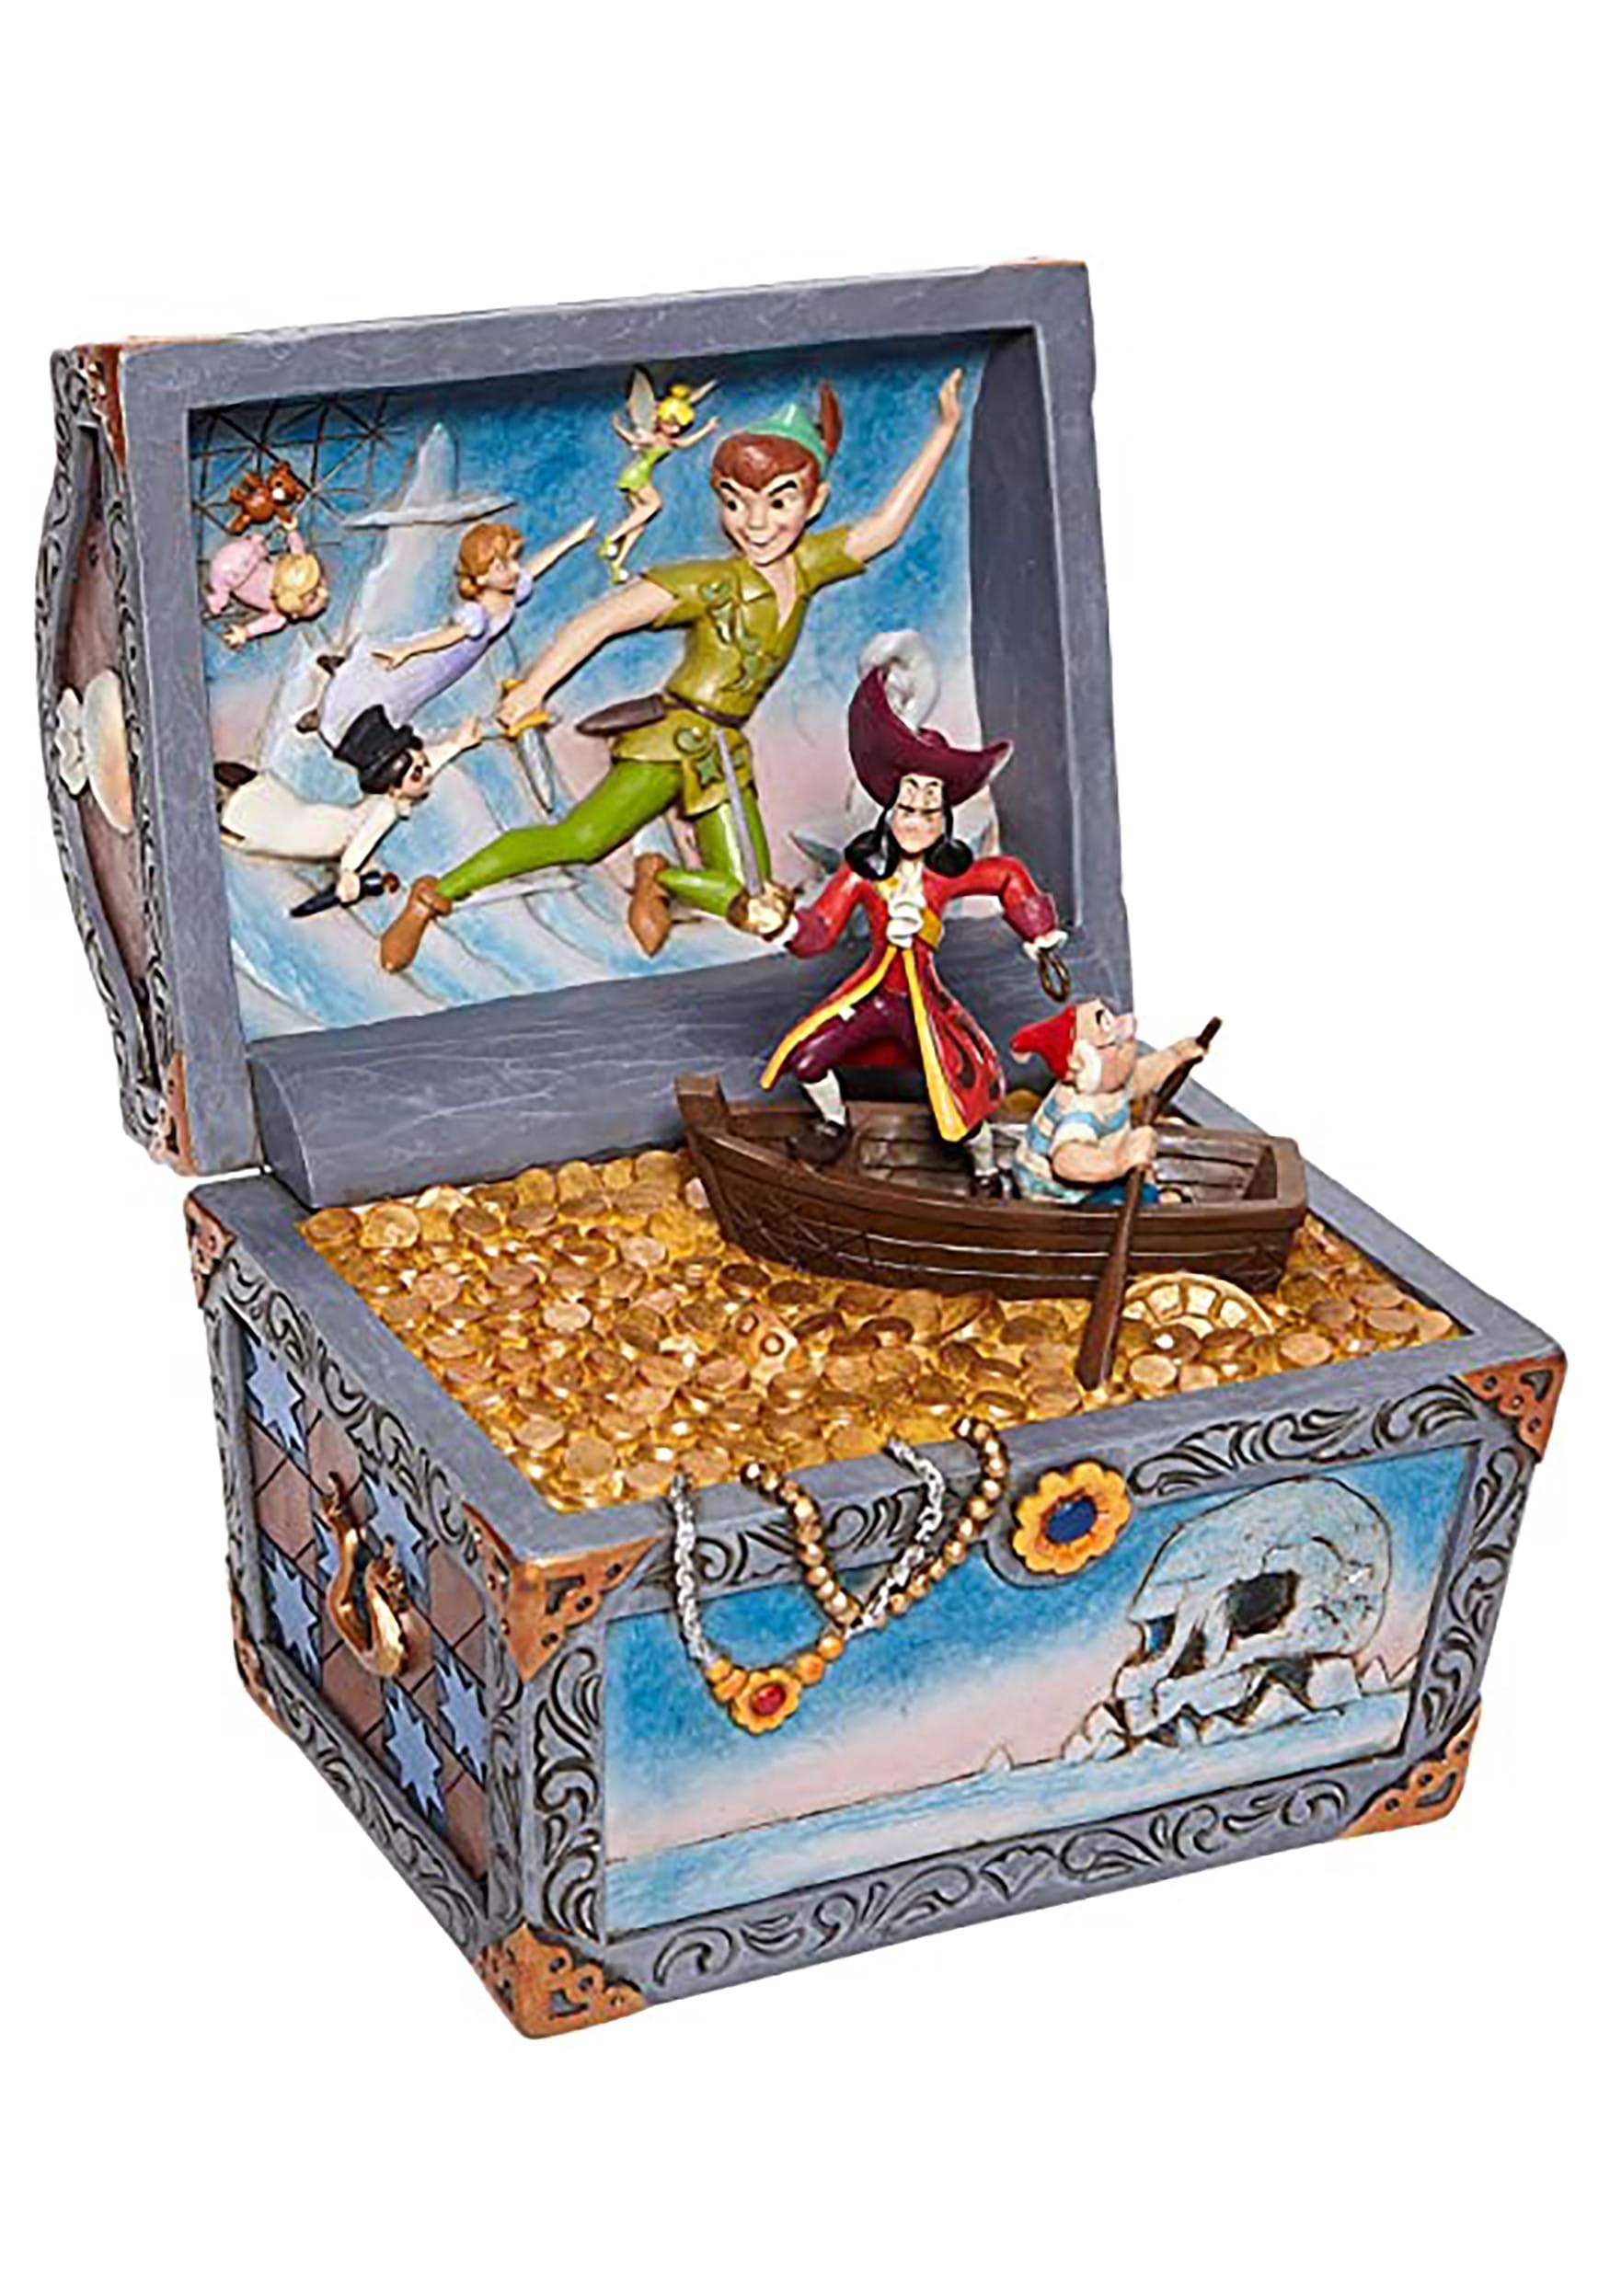 Image of Jim Shore Peter Pan Treasure Chest Jim Shore Diorama